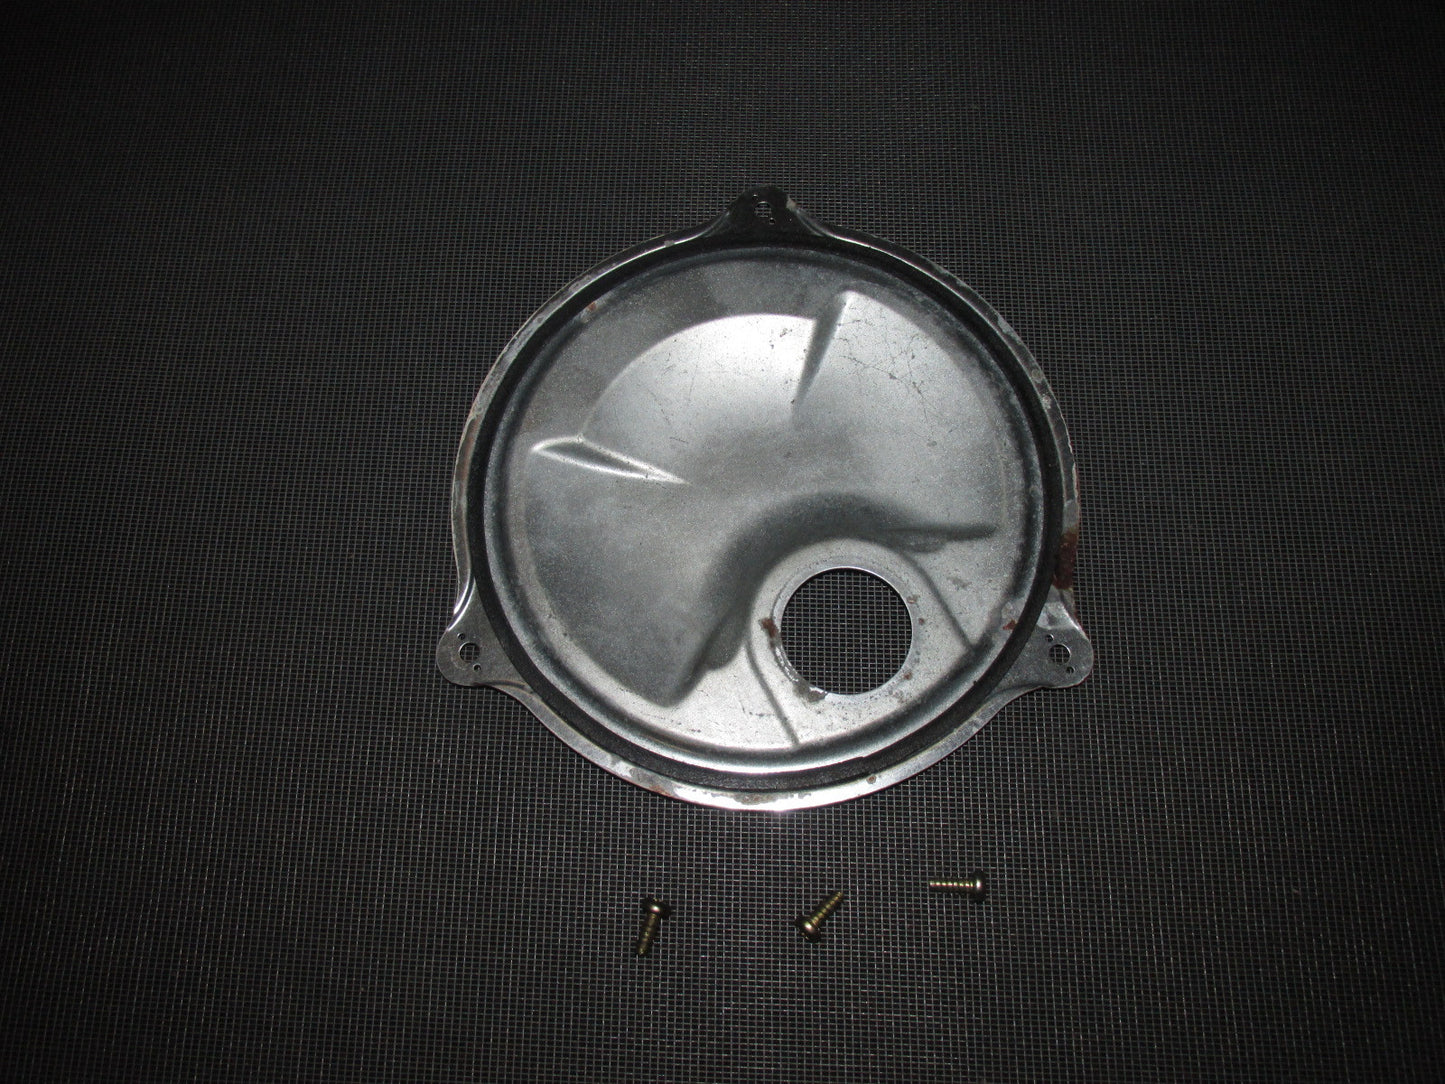 01 02 03 Acura CL OEM Interior Fuel Pump Cover